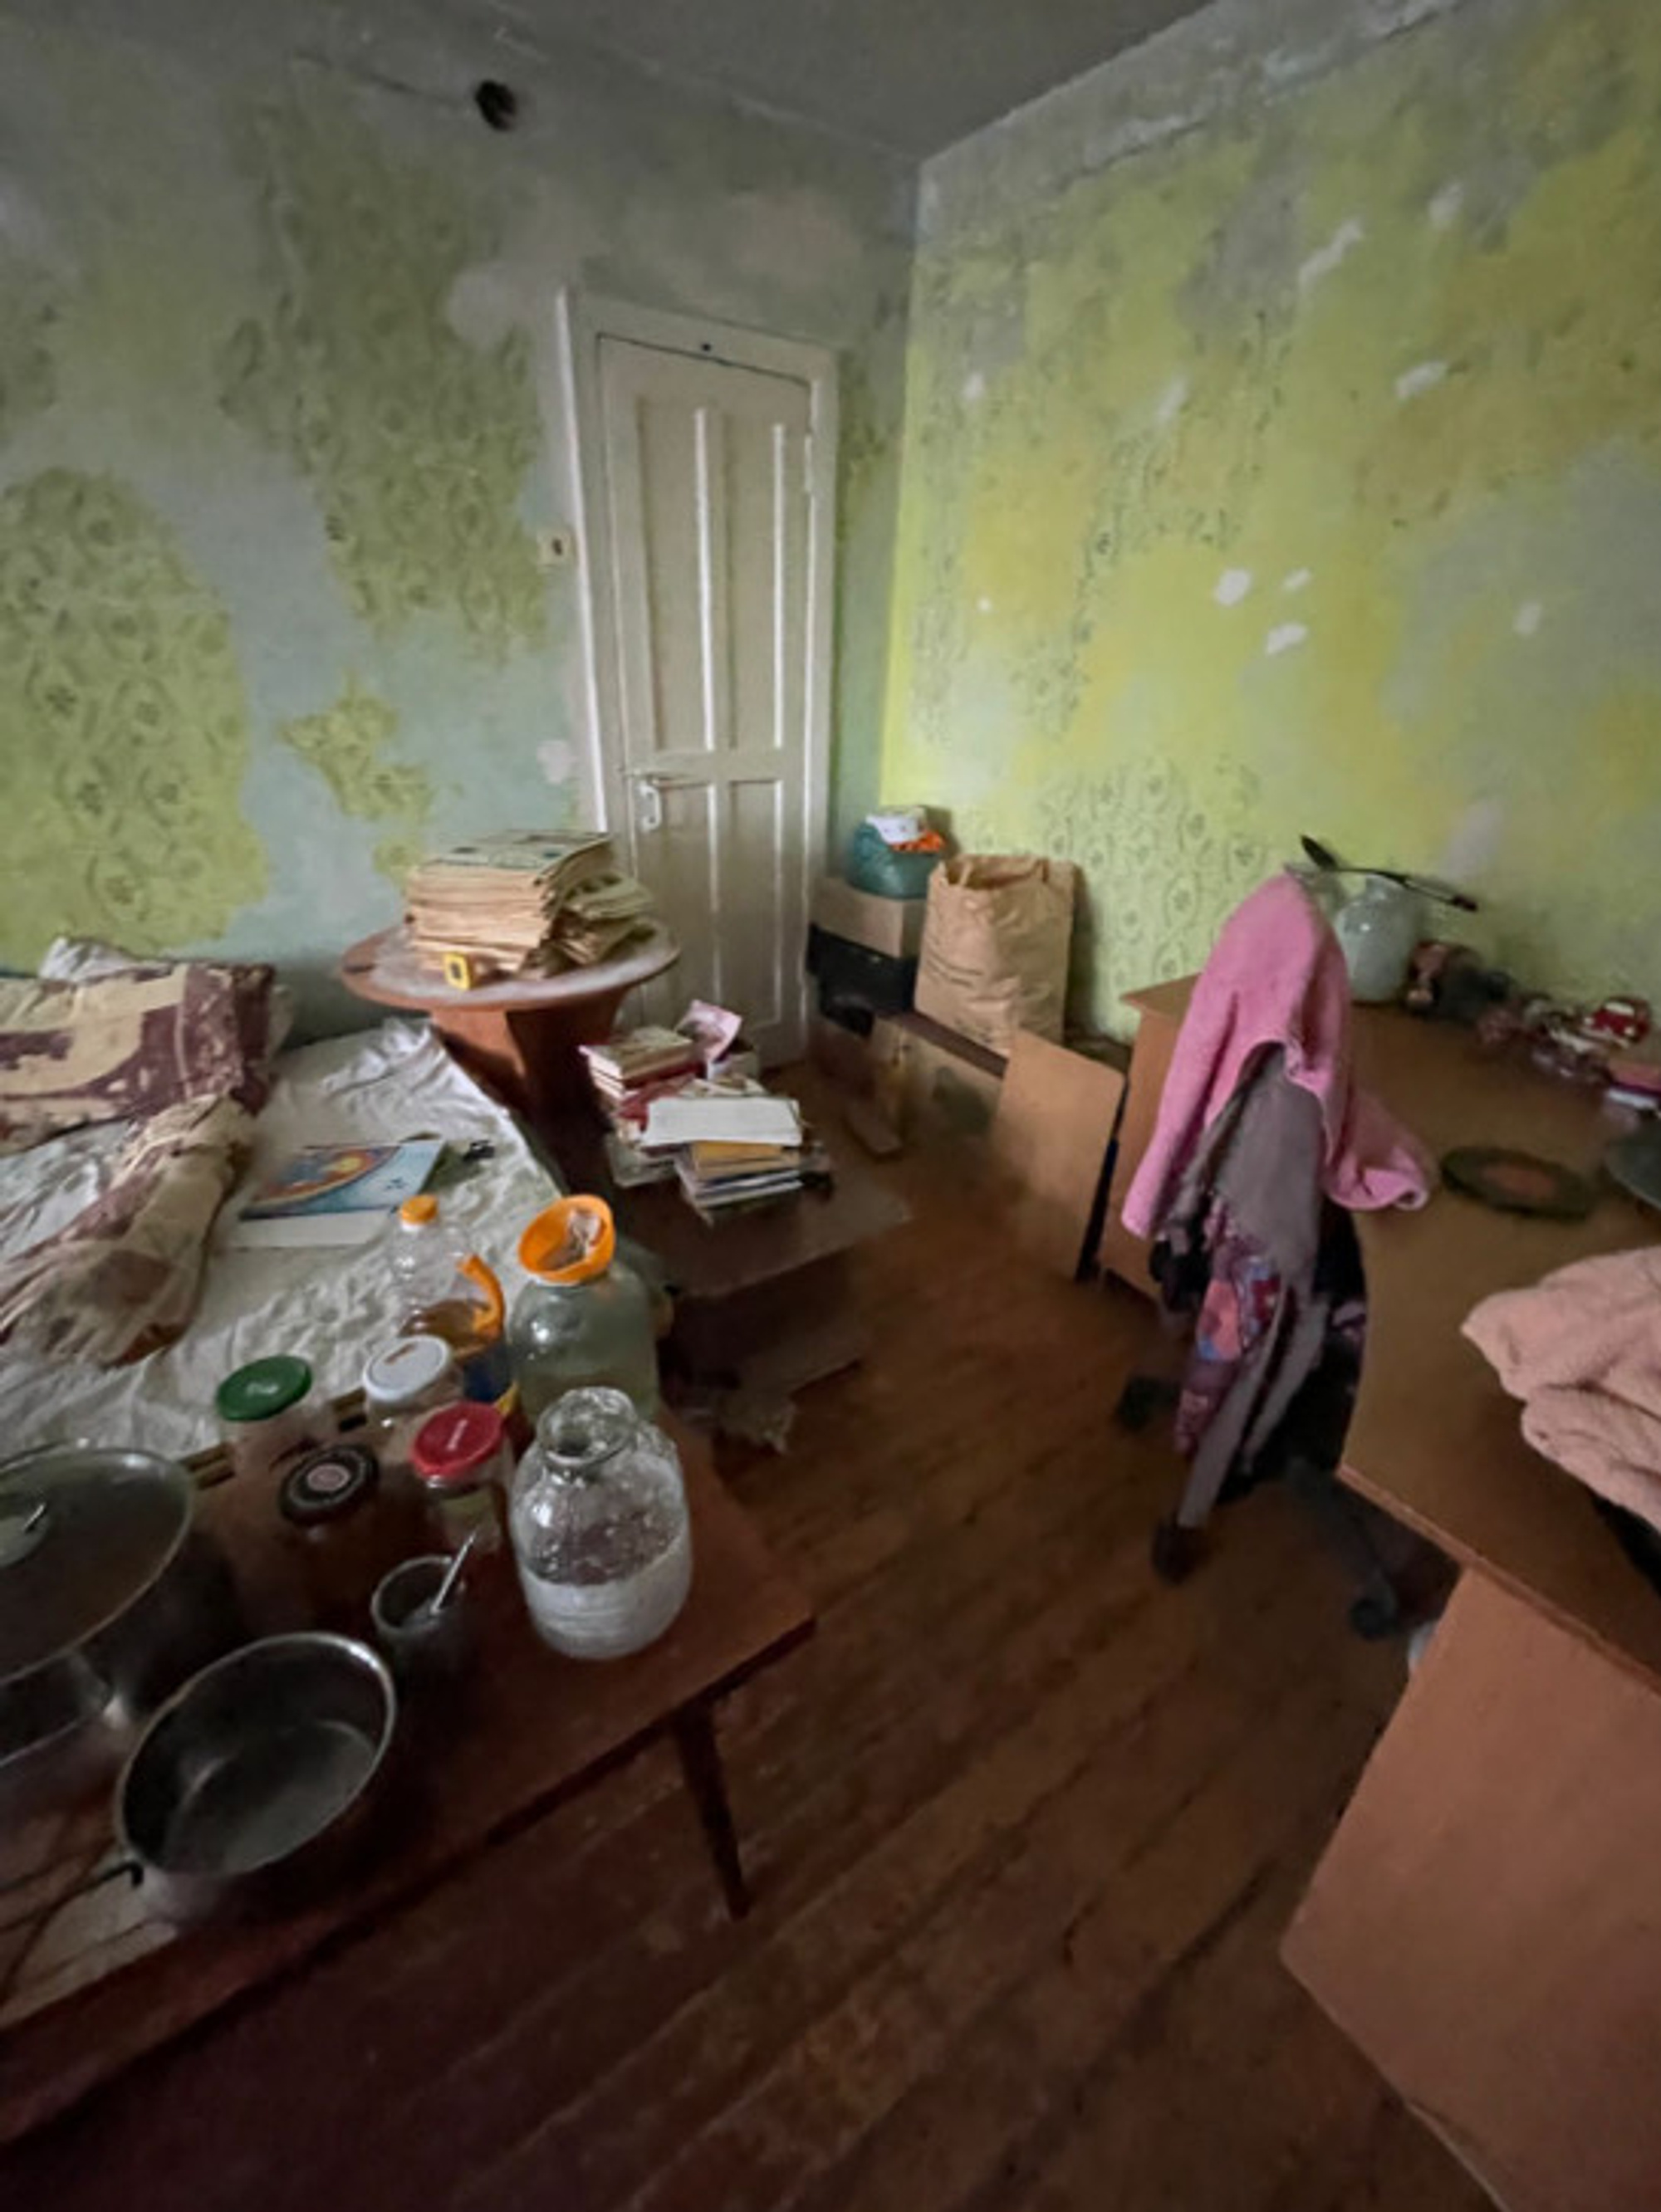 «Через стену слышали крики». Как в Екатеринбурге жила девочка-маугли: она не ходила в школу и голодала